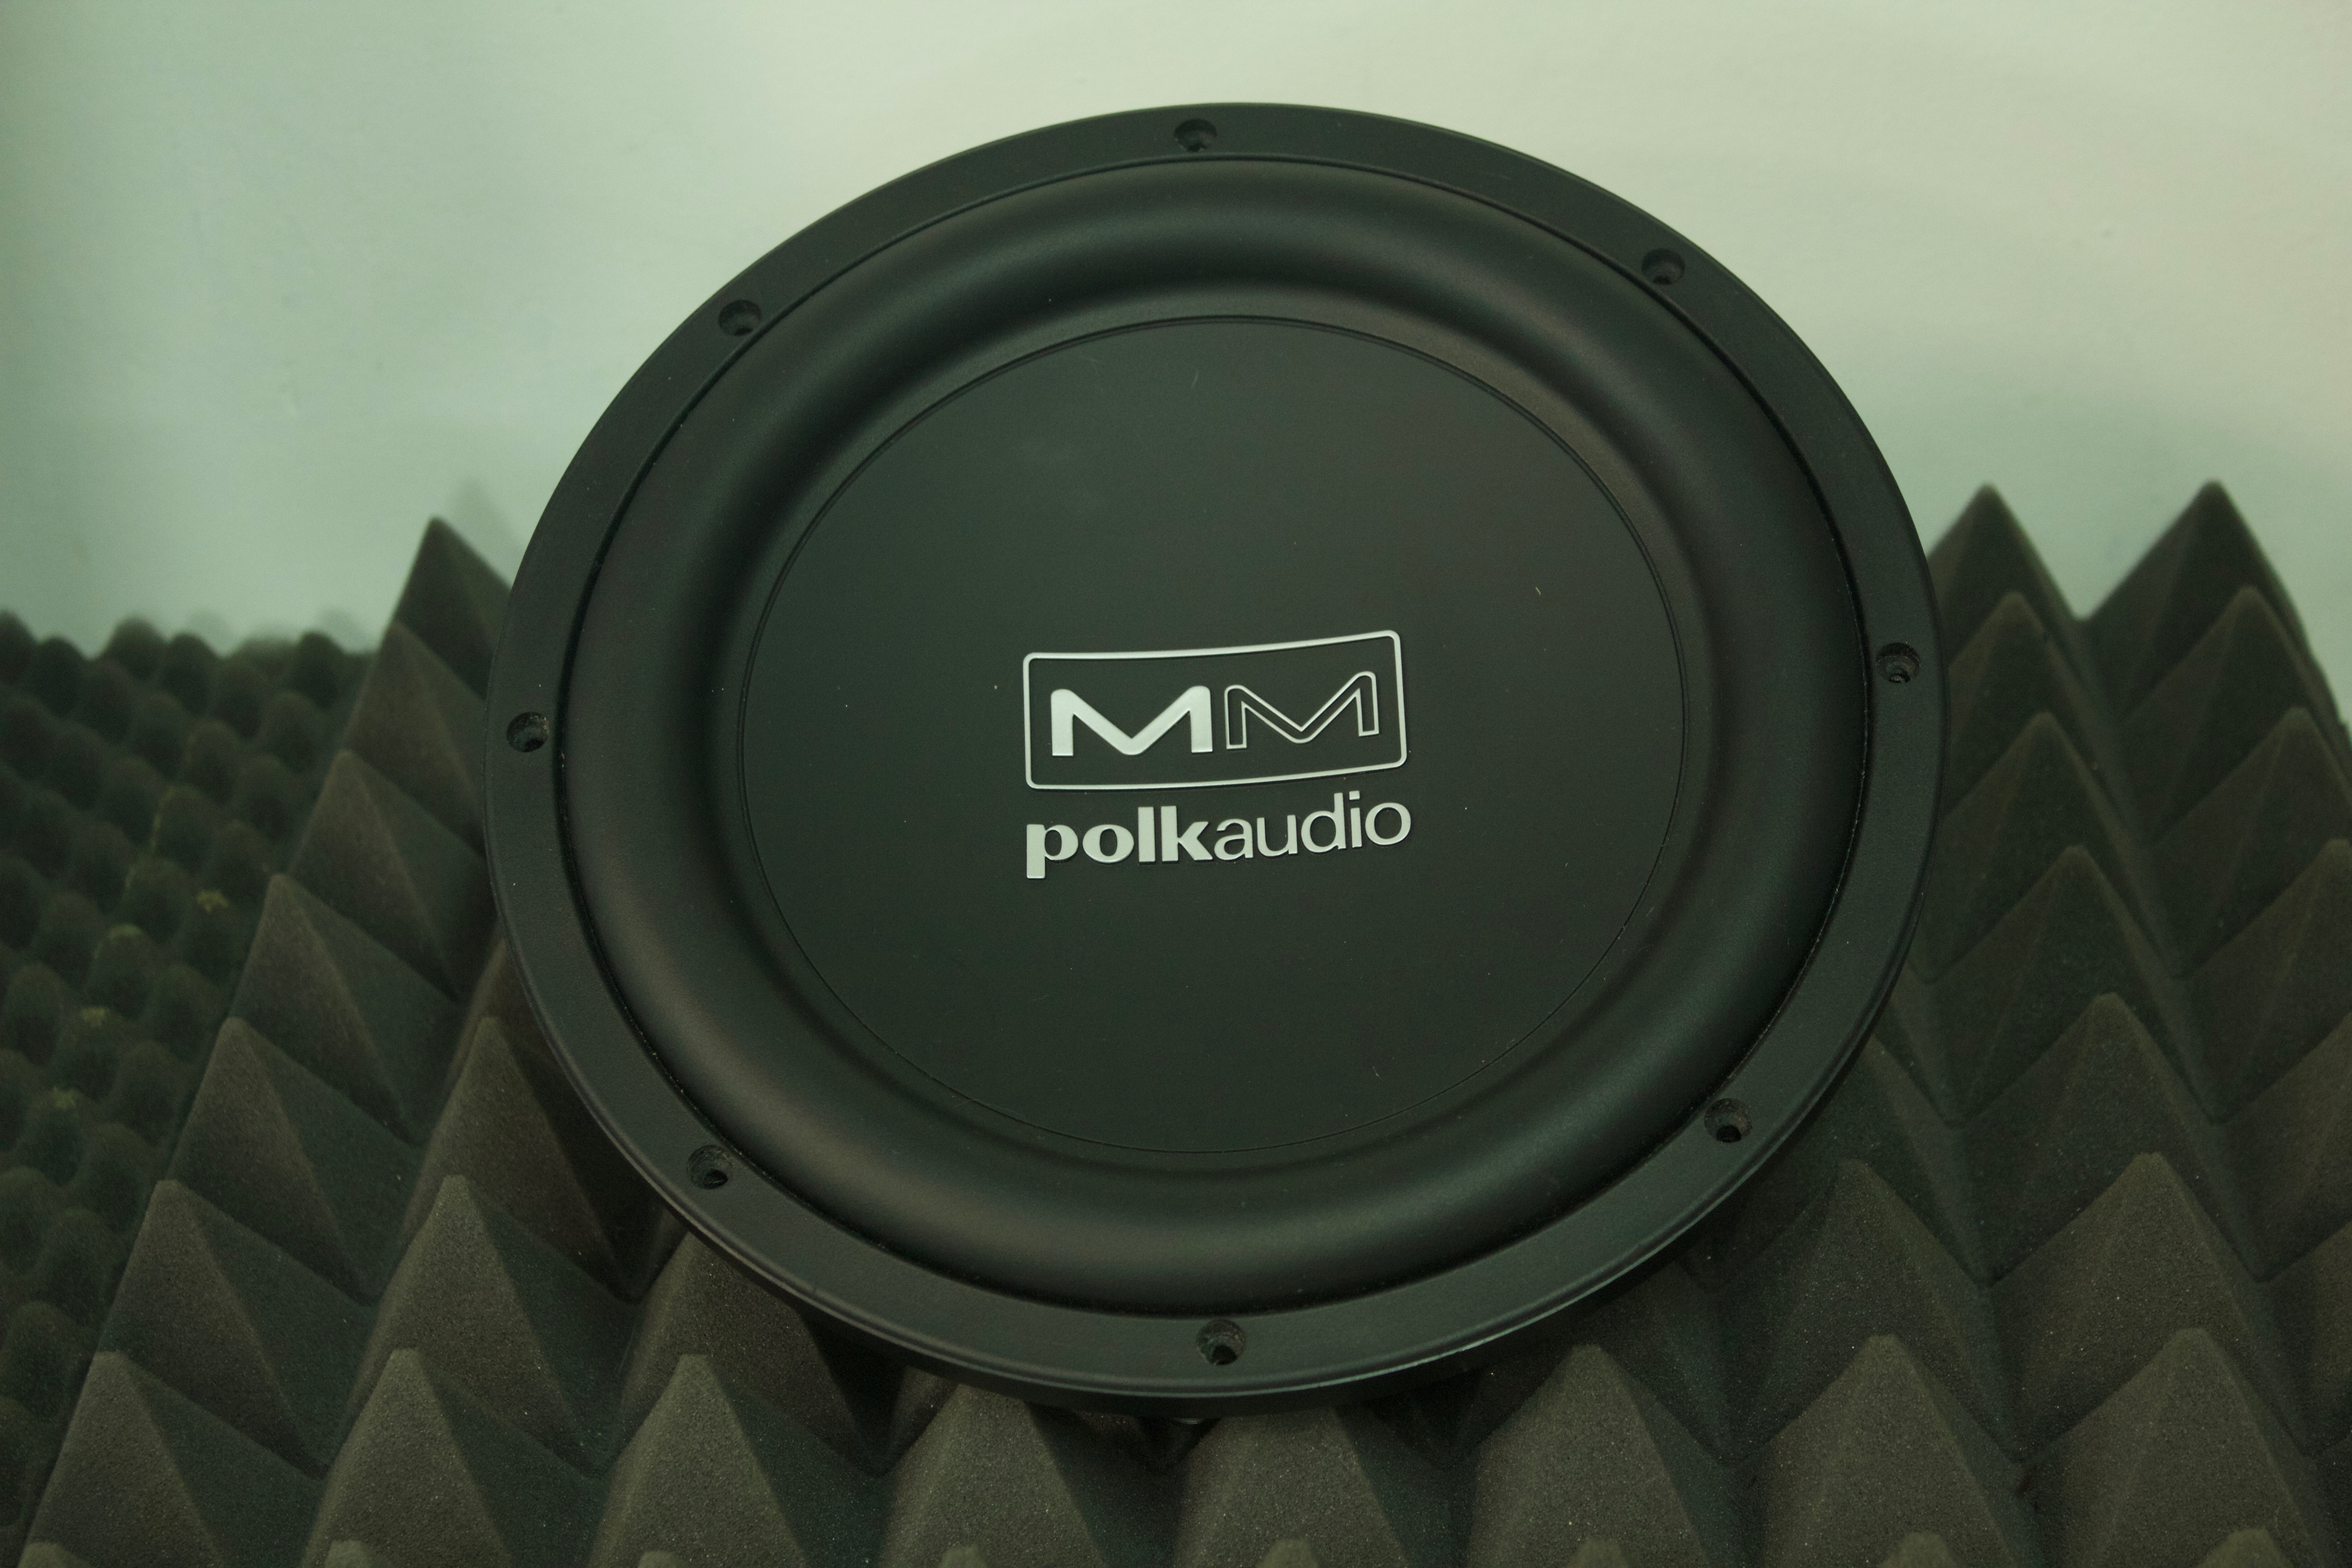 Polk audio žemadažnis